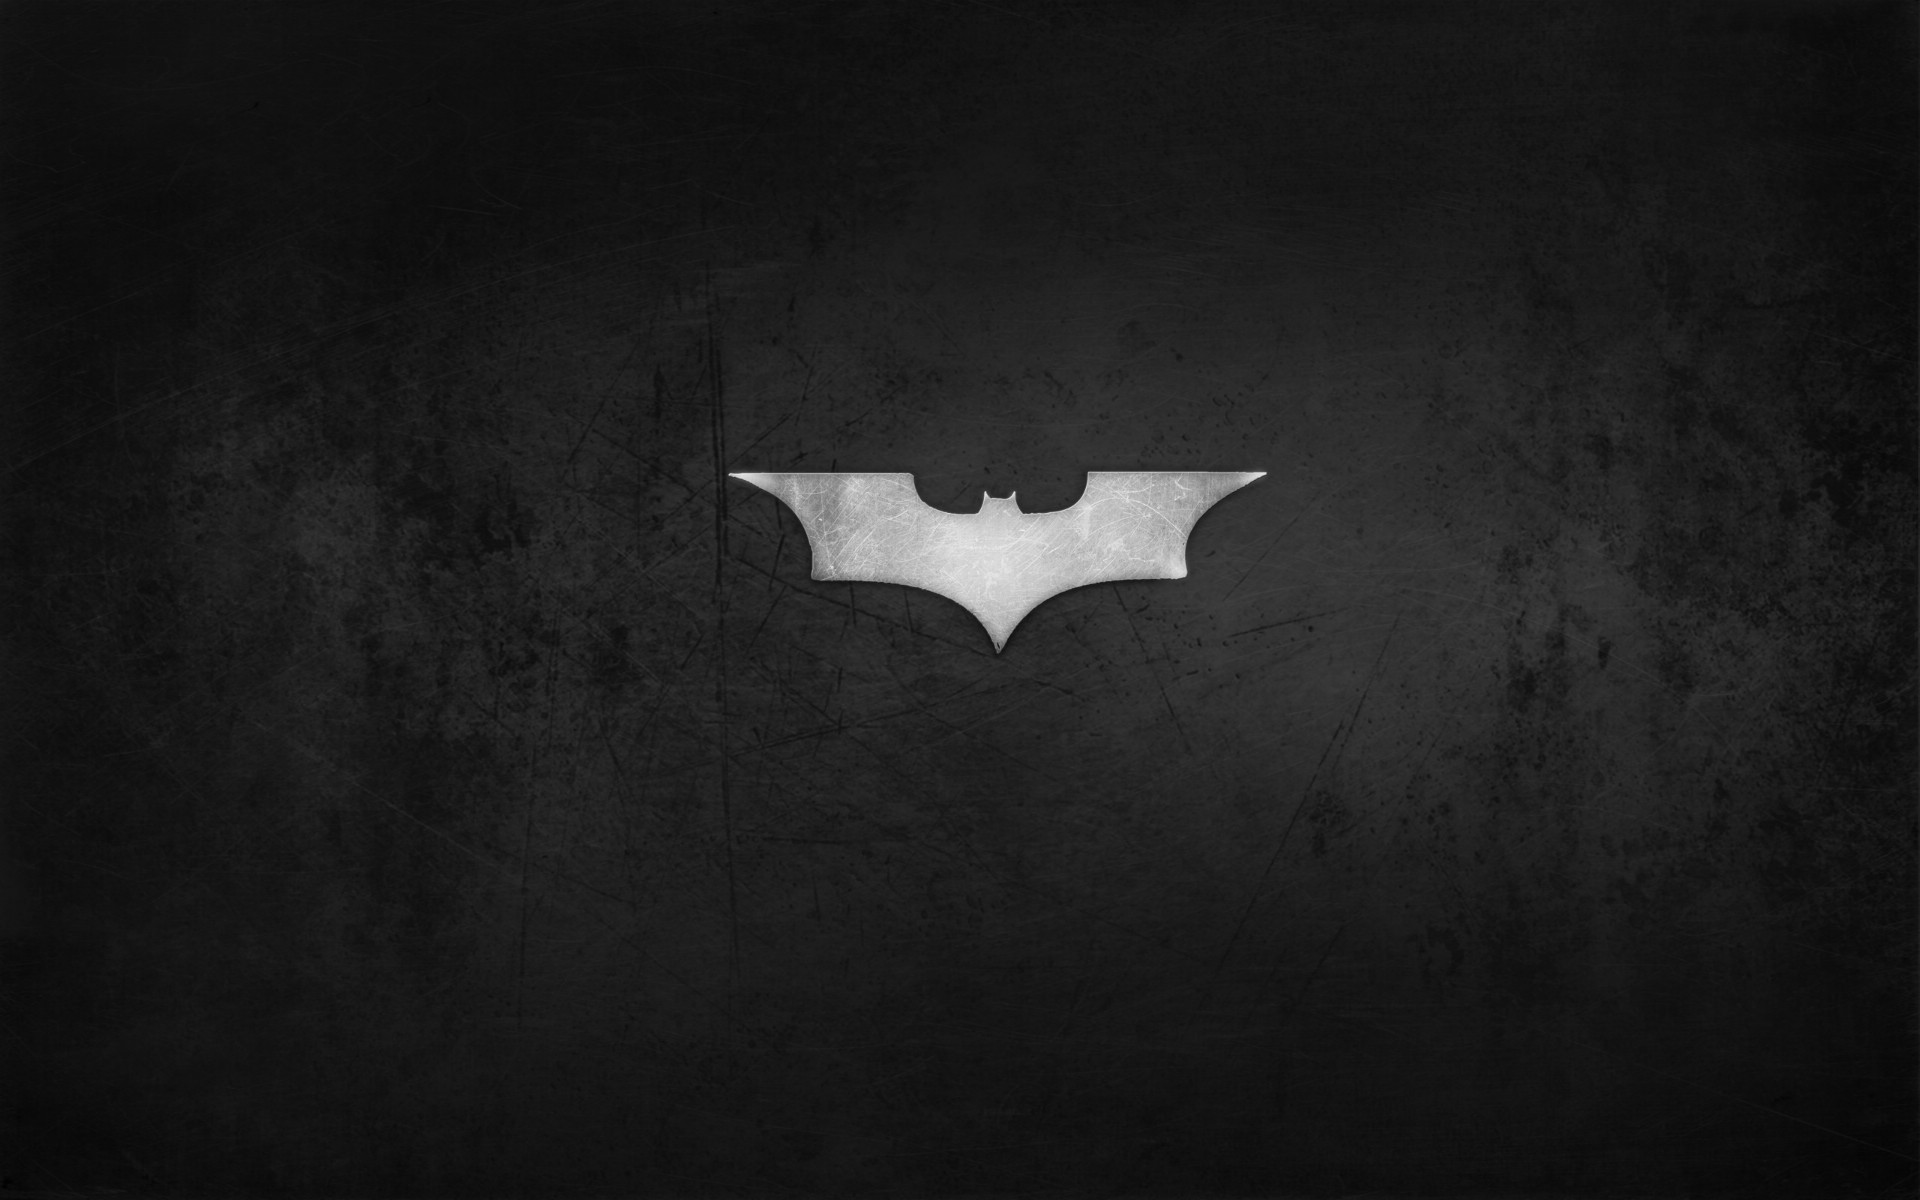 壁纸1920x1200蝙蝠侠 宽屏 桌酷精选一图 壁纸5壁纸 蝙蝠侠（宽屏）精壁纸 蝙蝠侠（宽屏）精图片 蝙蝠侠（宽屏）精素材 精选壁纸 精选图库 精选图片素材桌面壁纸